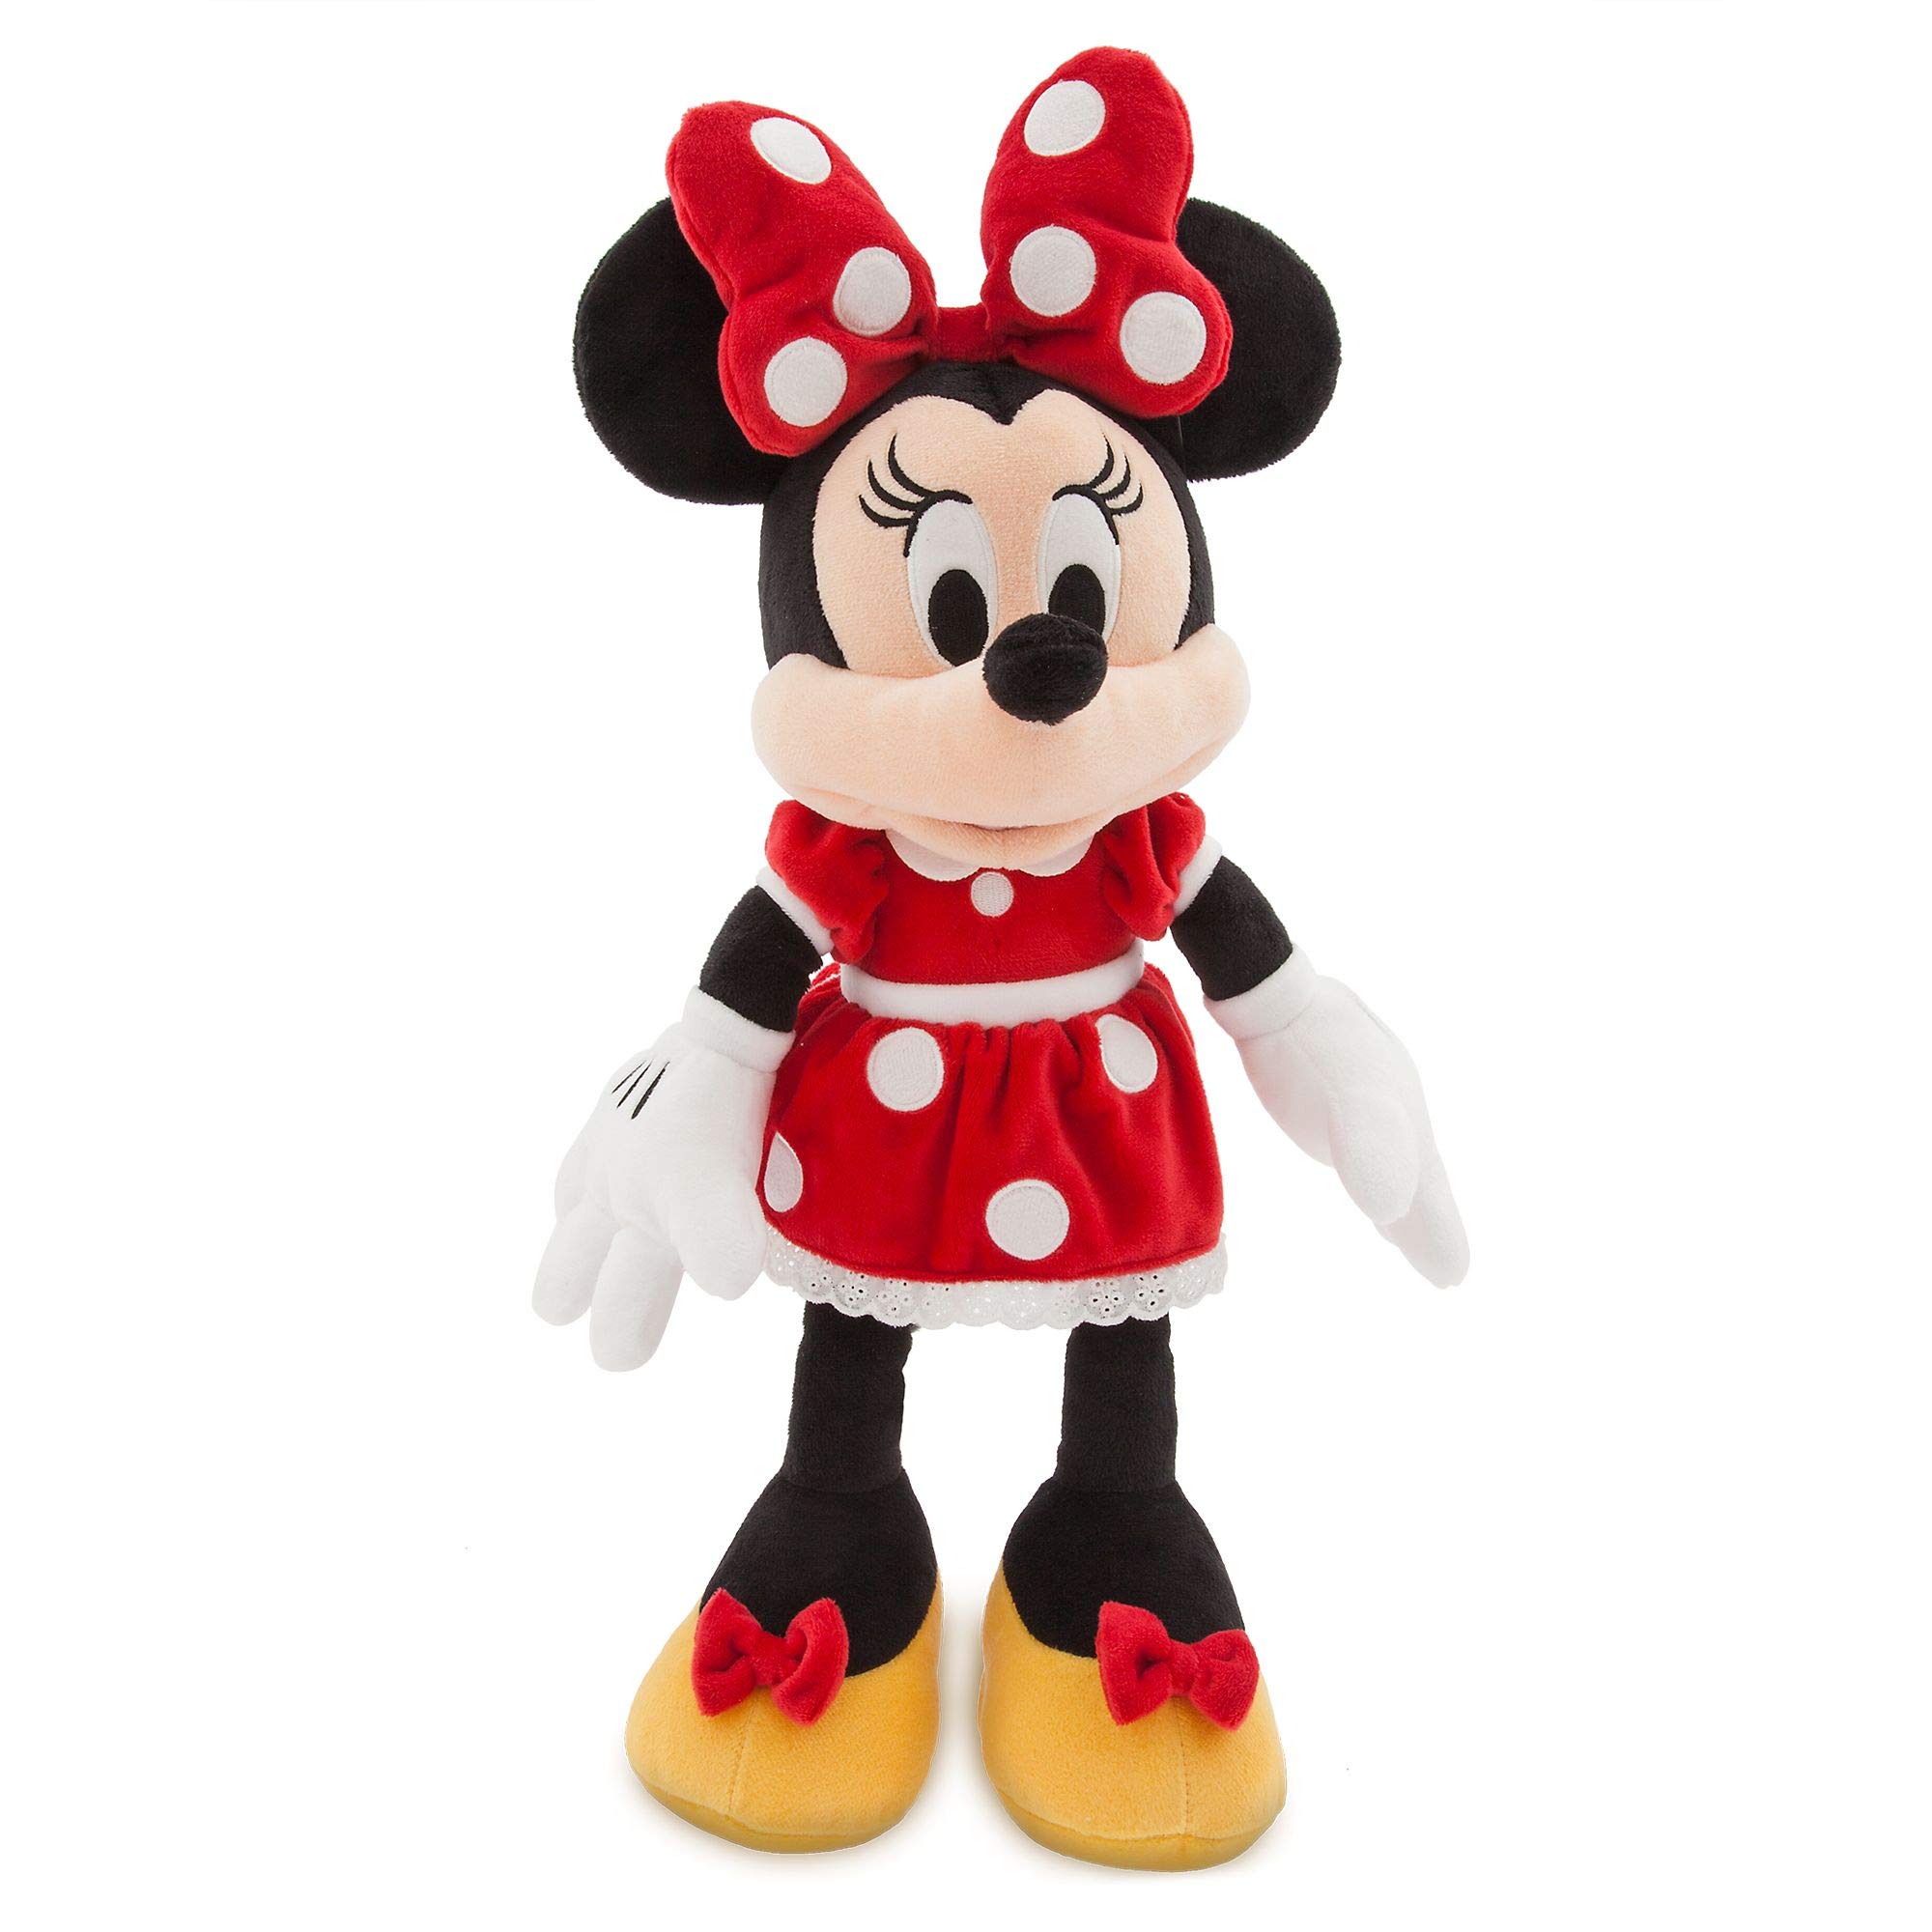 Disney Store Mittelgroßes Kuscheltier Minnie Maus, 47 cm / 18”, Kultfigur roten Pünktchenkleid mit Schleife, Stickereien und strukturierten Ohren, für alle Altersstufen geeignet